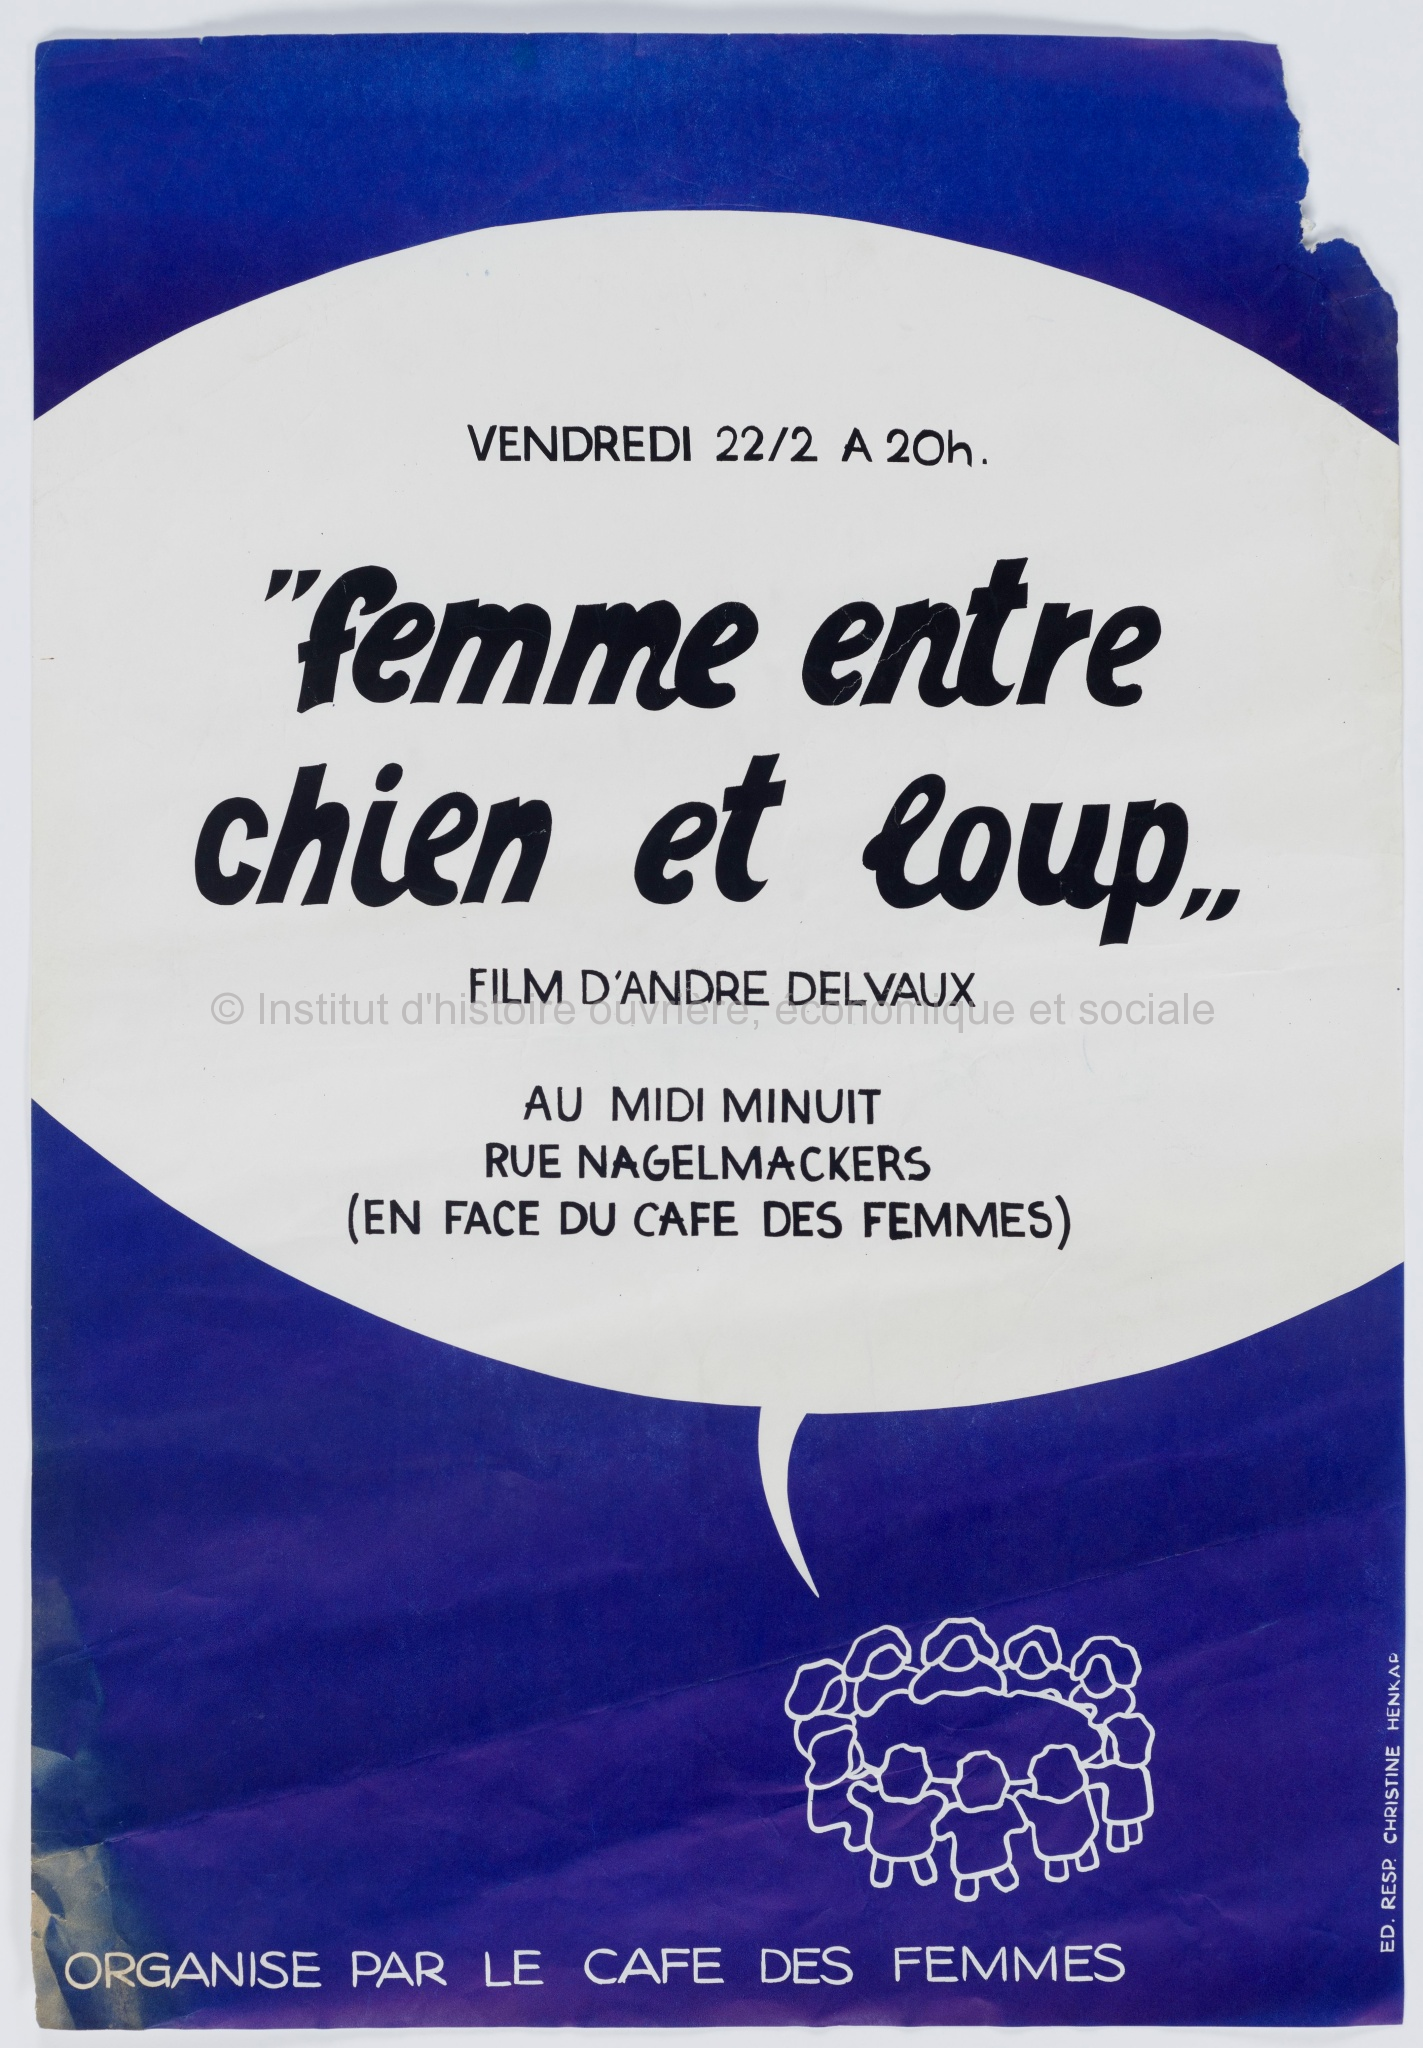 Vendredi 22/2 à 20h "Femme entre chien et loup" film d'André Delvaux organisé par le Café des femmes